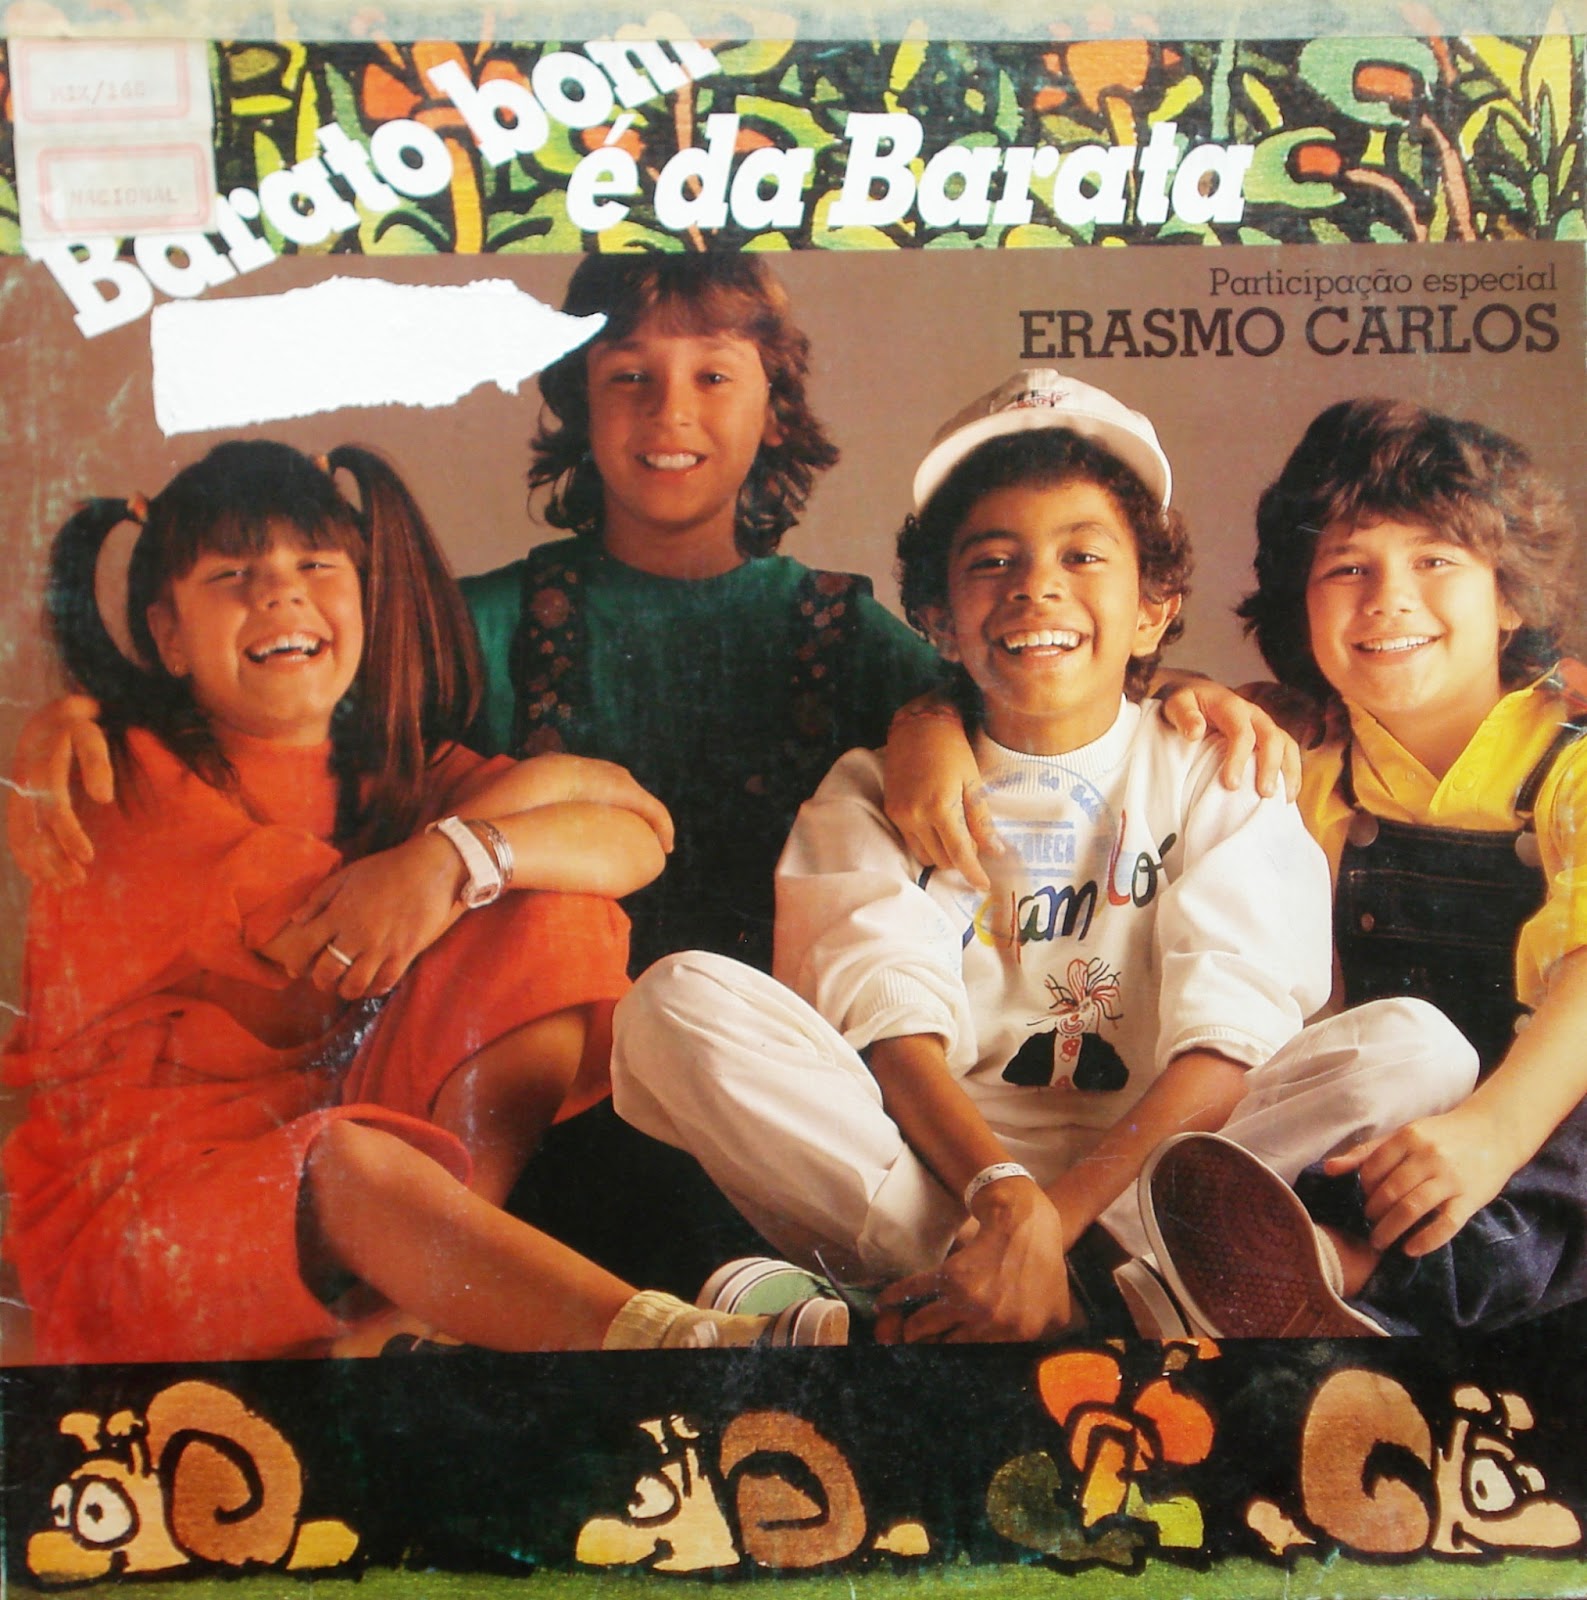 Foto da capa do LP ´Barato Bom é da Barata` da Turma do Balão Mágico, de 1985.